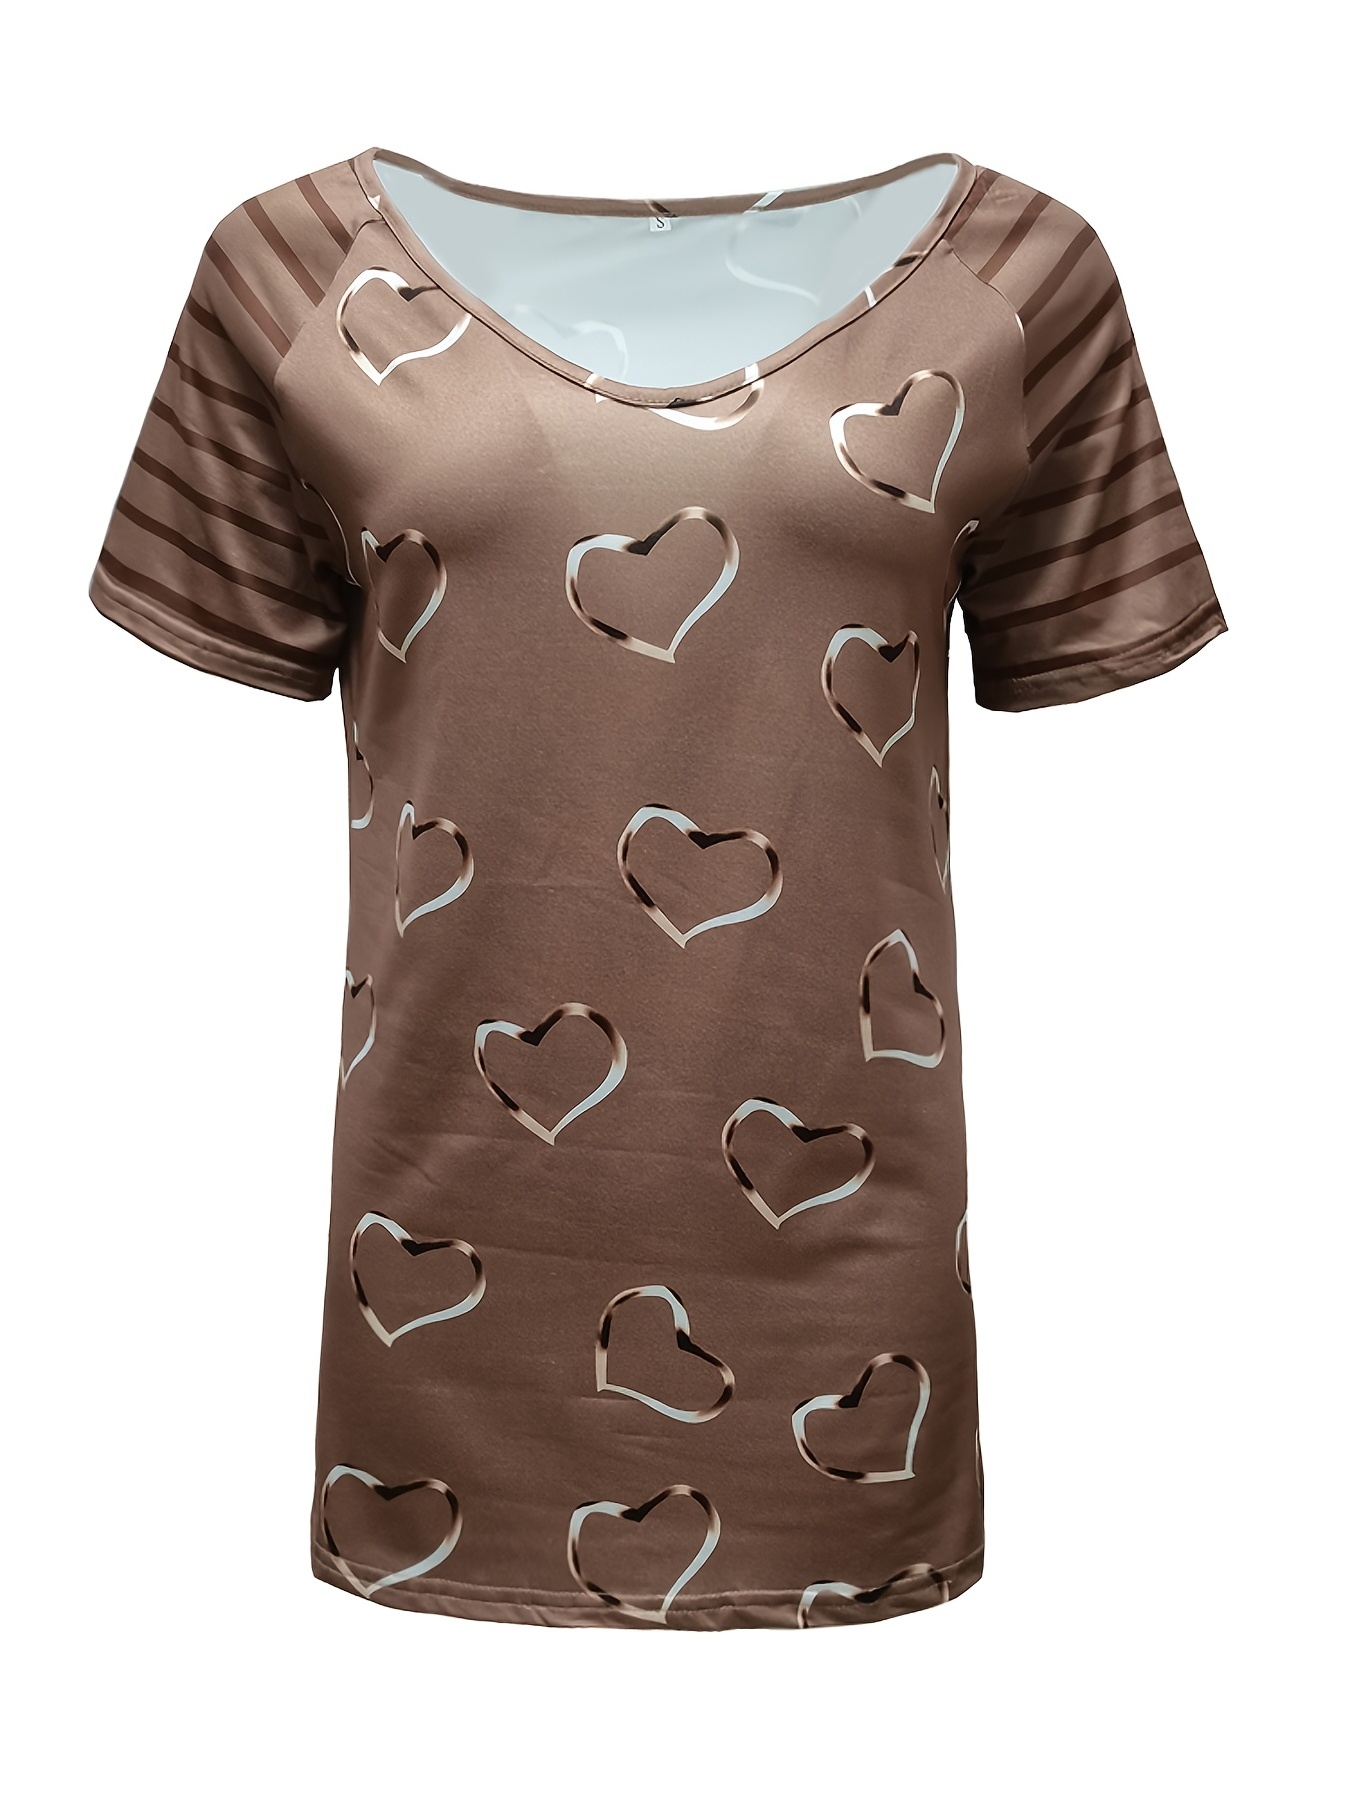 Camiseta Rayas Corazón - Camisetas Mujer